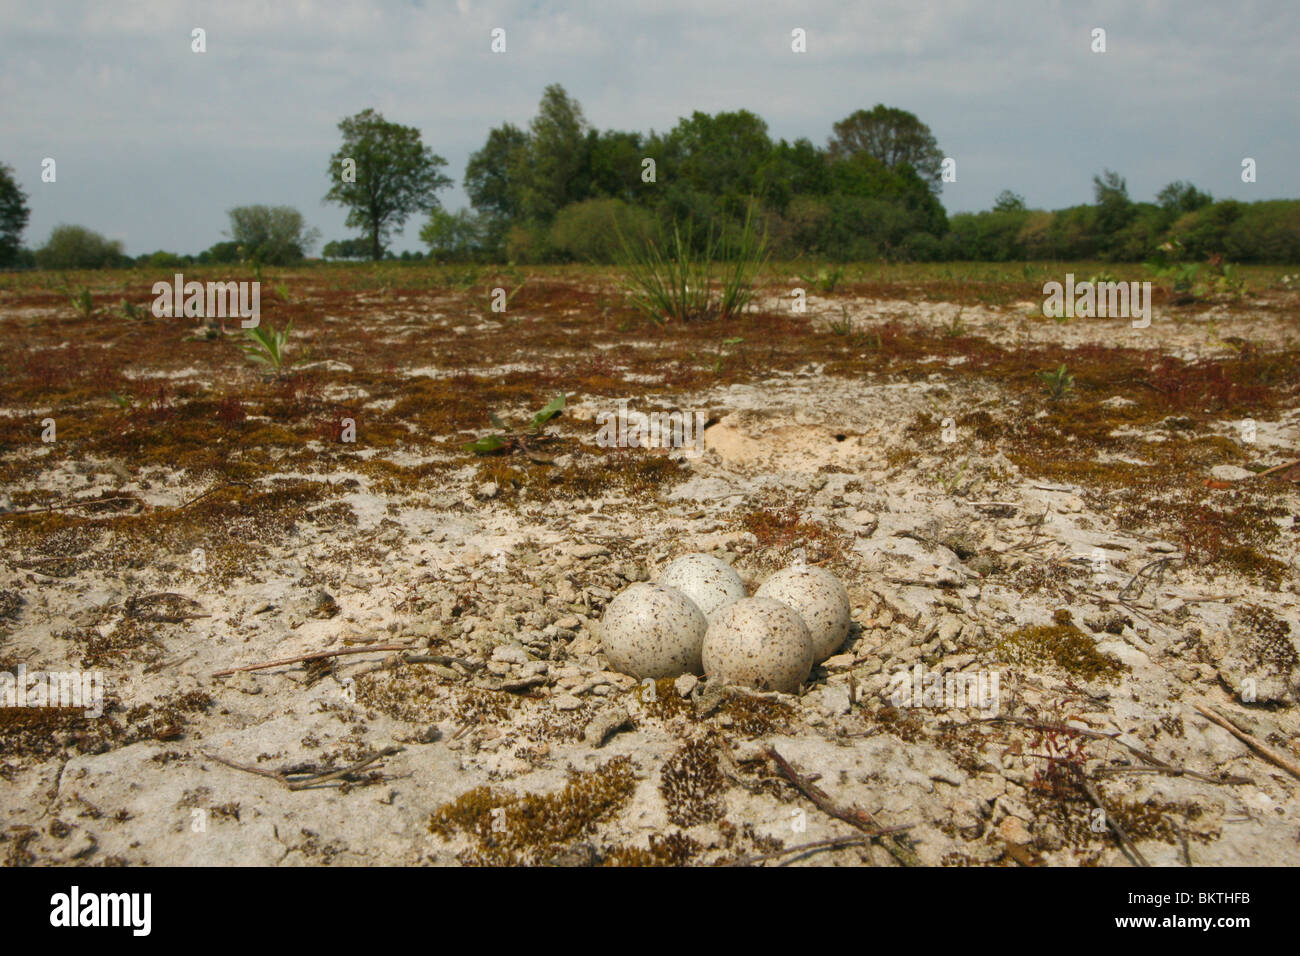 nest van kleine plevier met vier eieren op droge schrale zandgrond Stock Photo